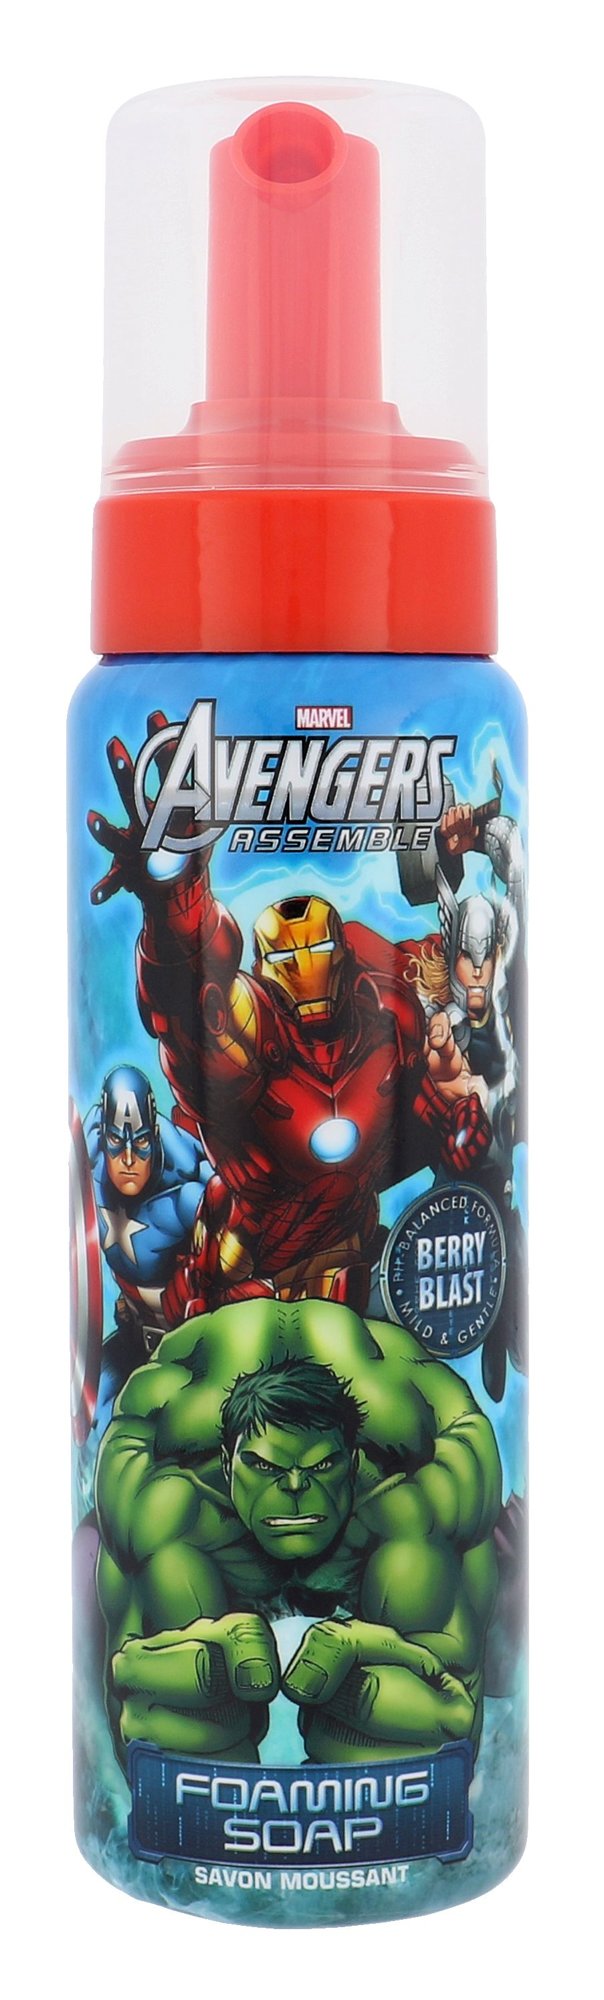 Marvel Avengers 250ml vonios putos